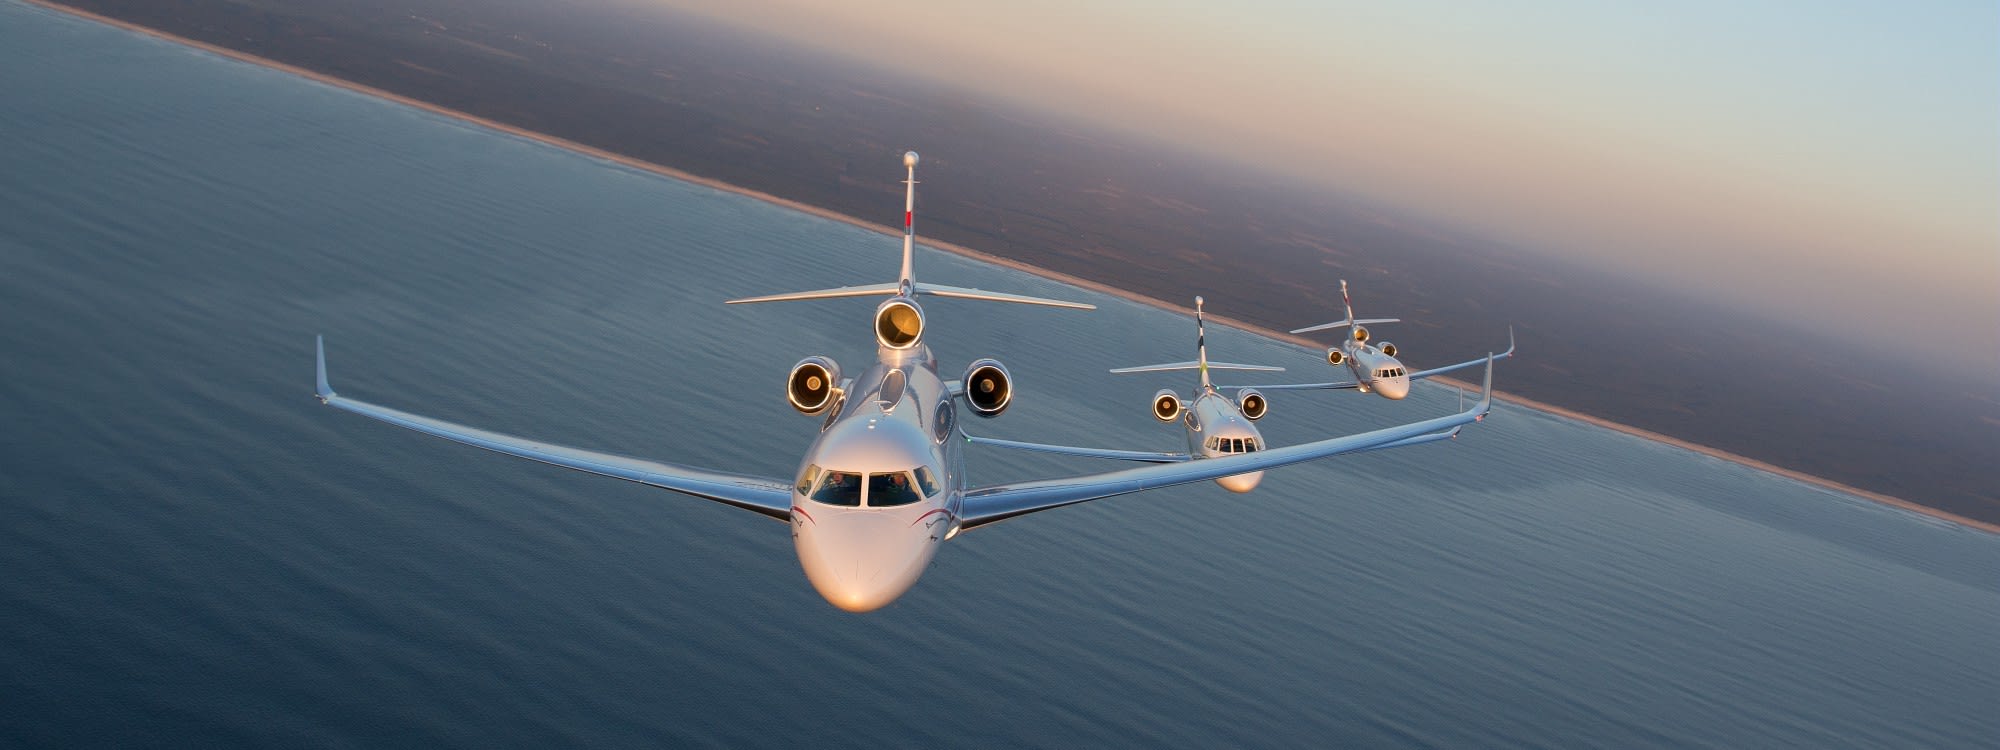 Falcon 2000S, Falcon 7X et Falcon 900LX en vol.